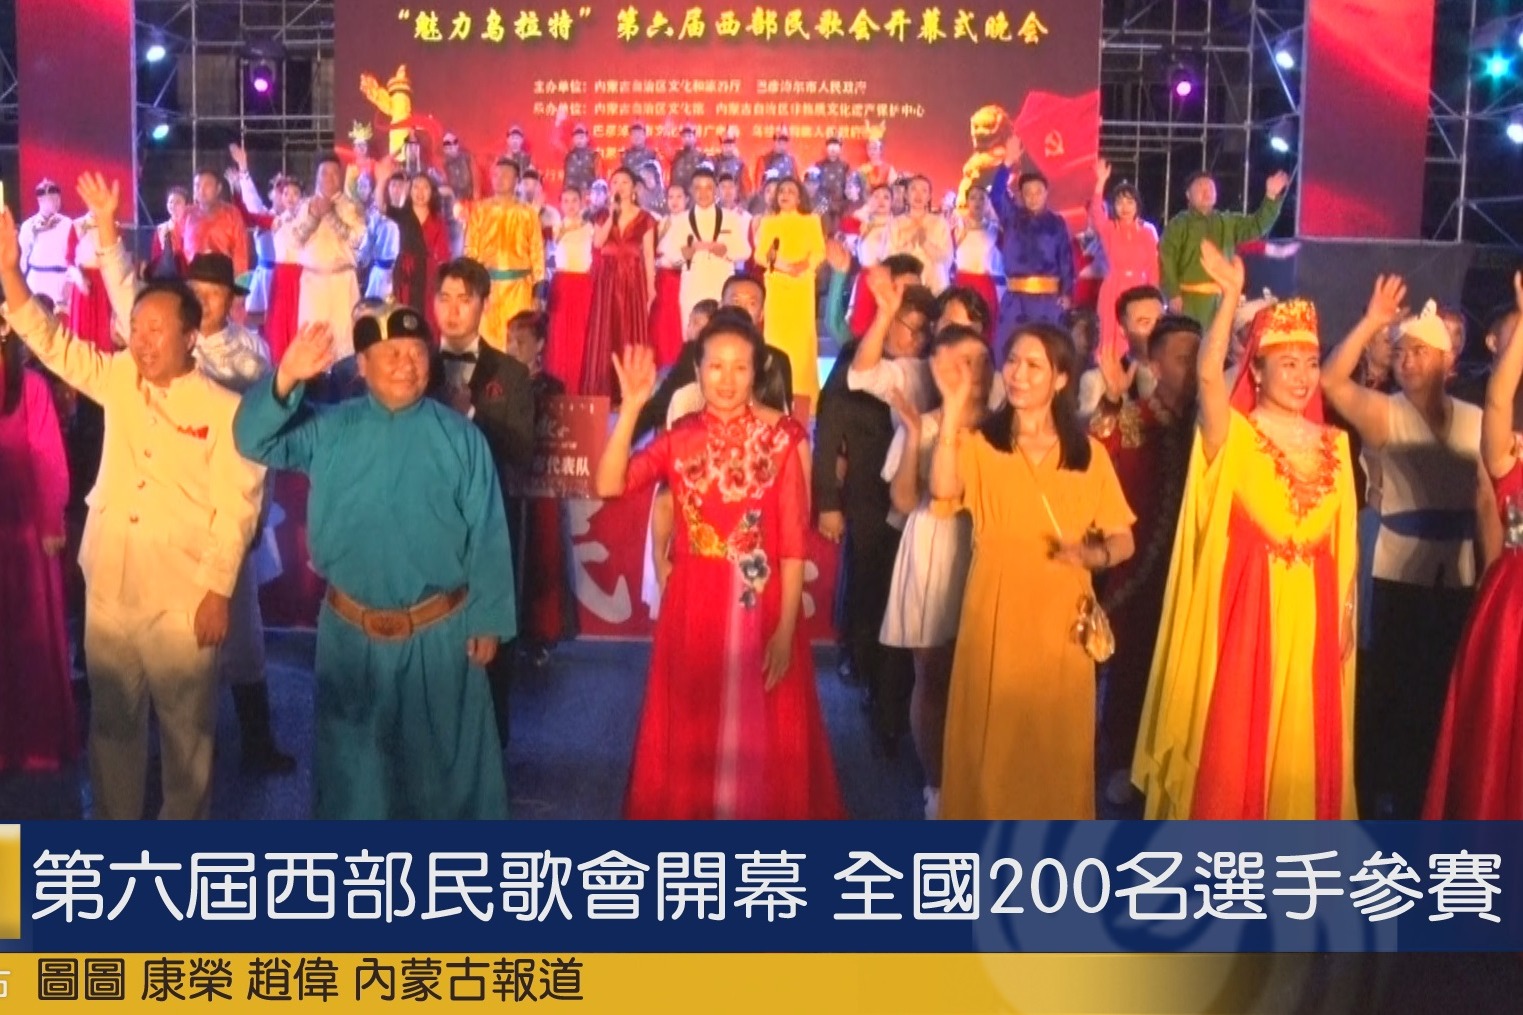 第六届西部民歌会开幕 全国200名选手参赛